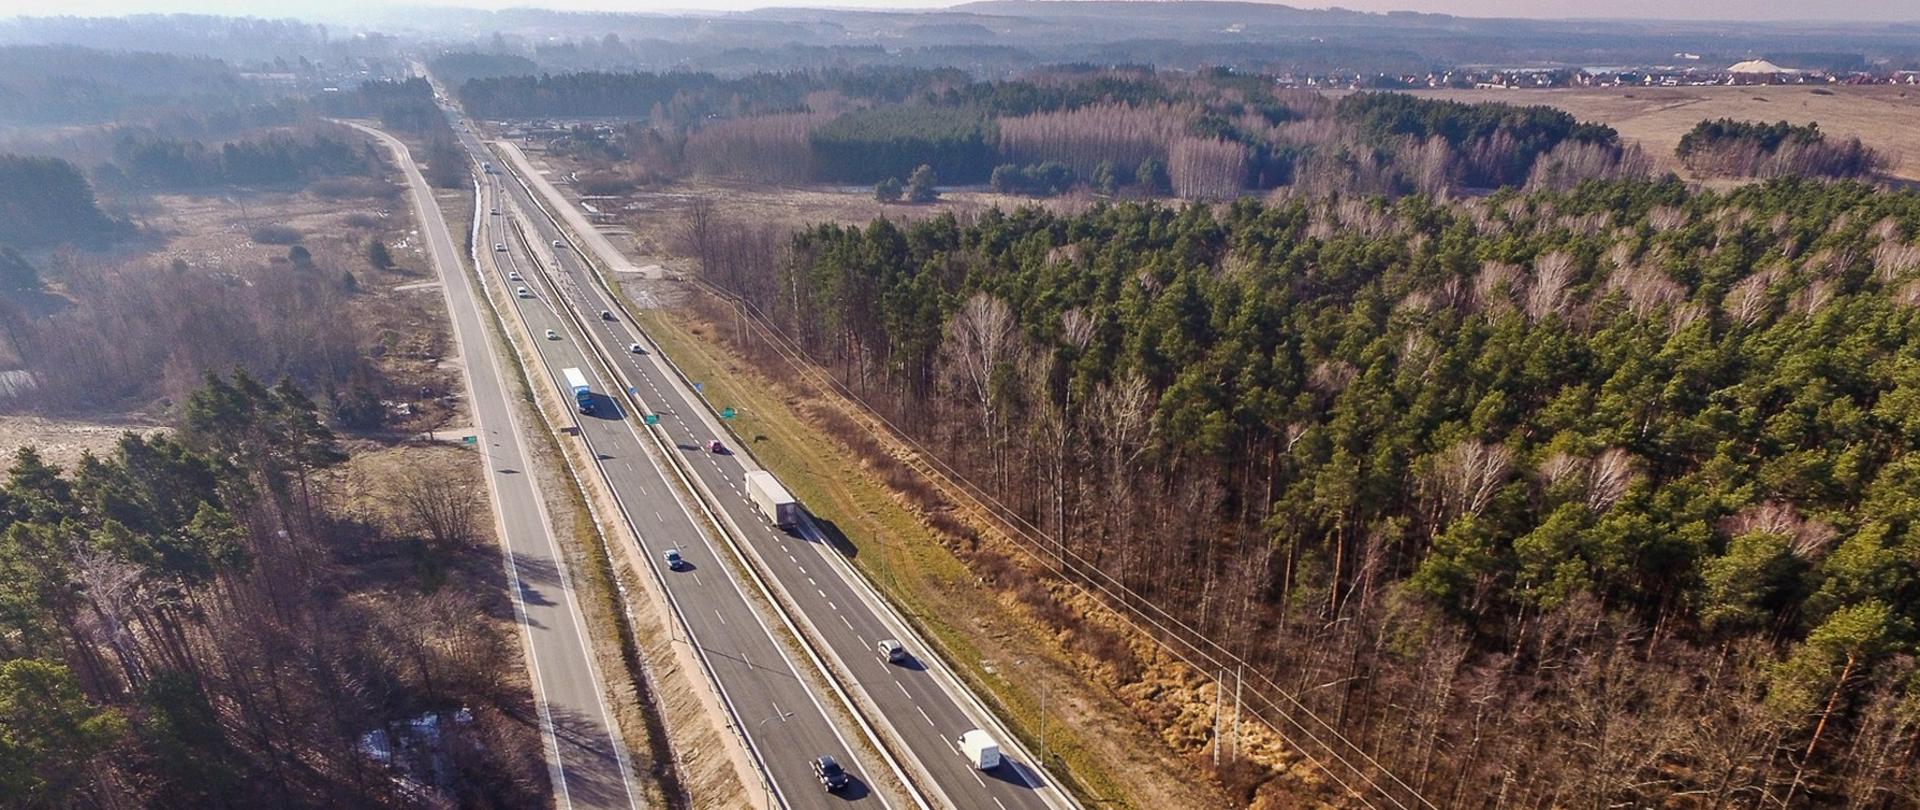 DK73 obwodnica Morawicy etap I - zdjęcie z drona przedstawia dwujezdniową drogę główną z równolegle biegnącą drogą dojazdową, przy drodze drzewa, w oddali dwie jezdnie schodzą się w jedną